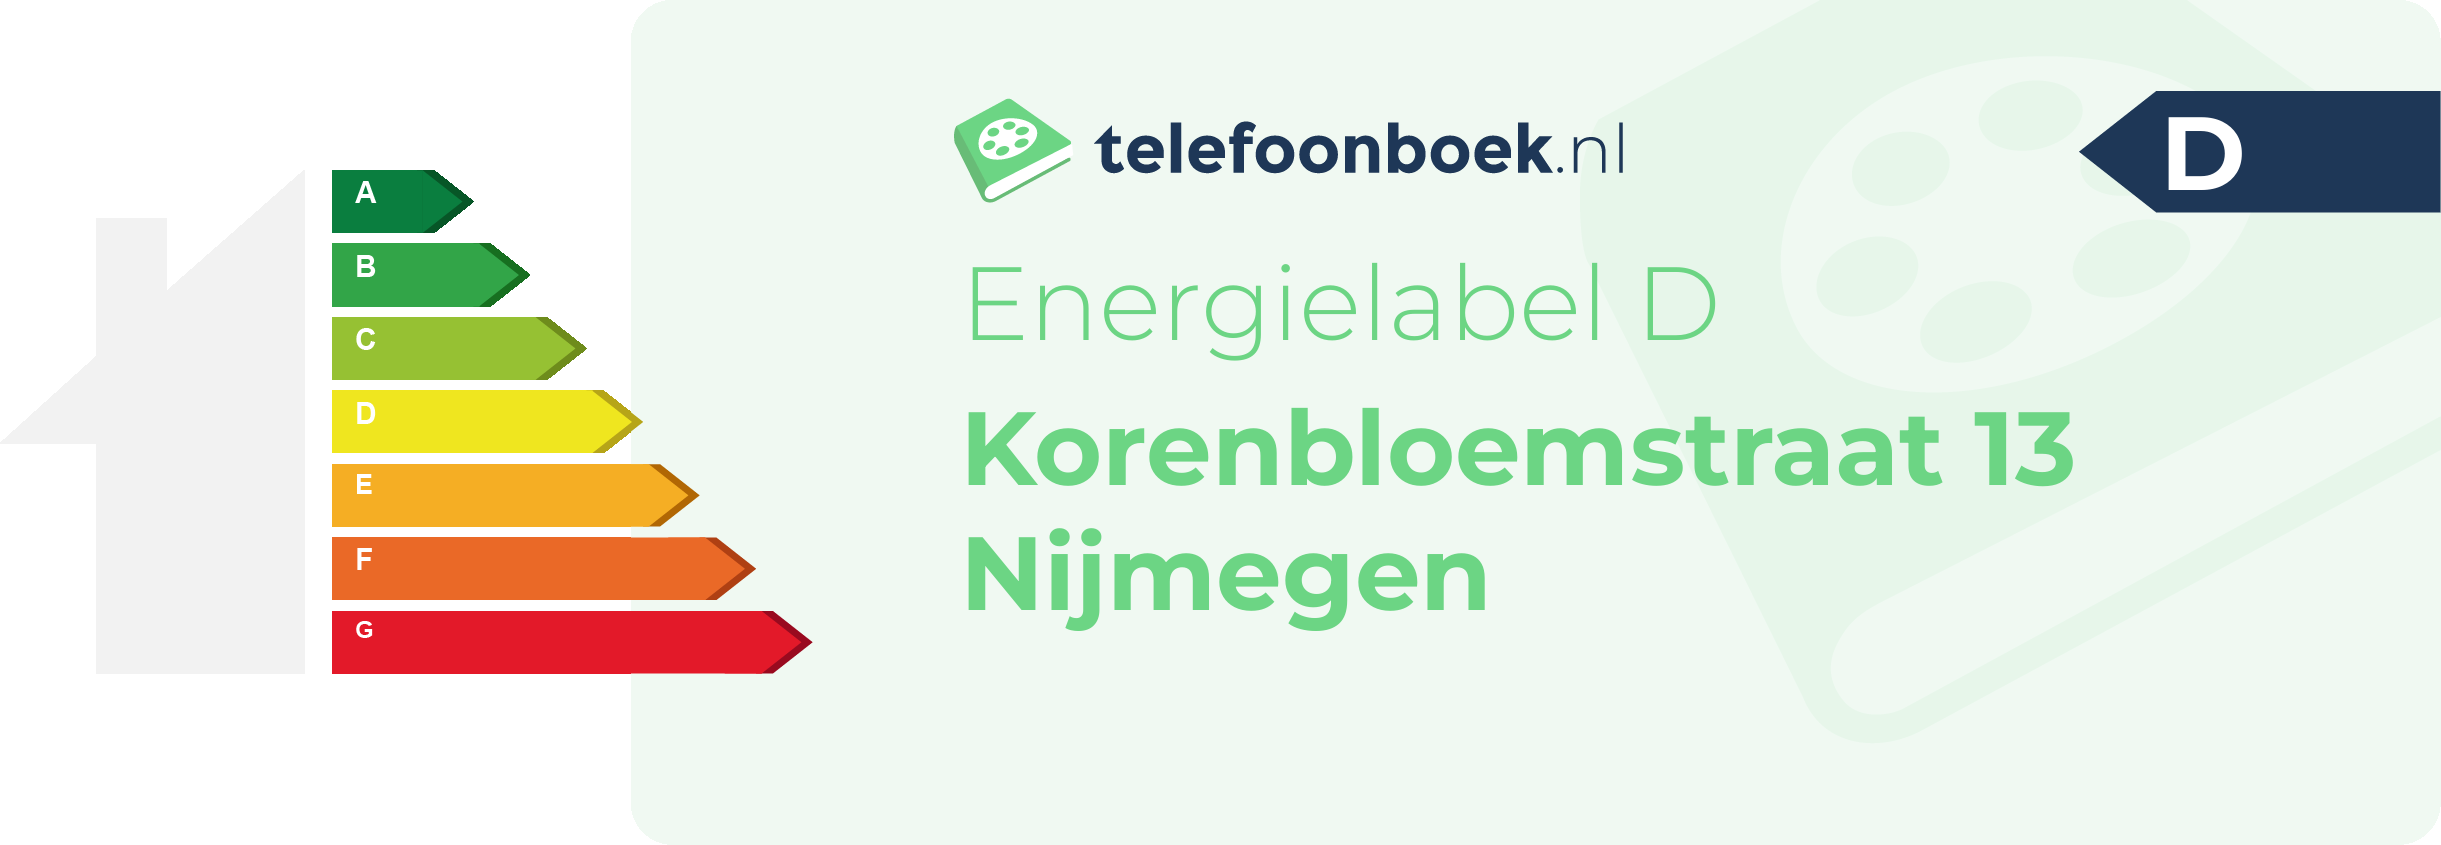 Energielabel Korenbloemstraat 13 Nijmegen